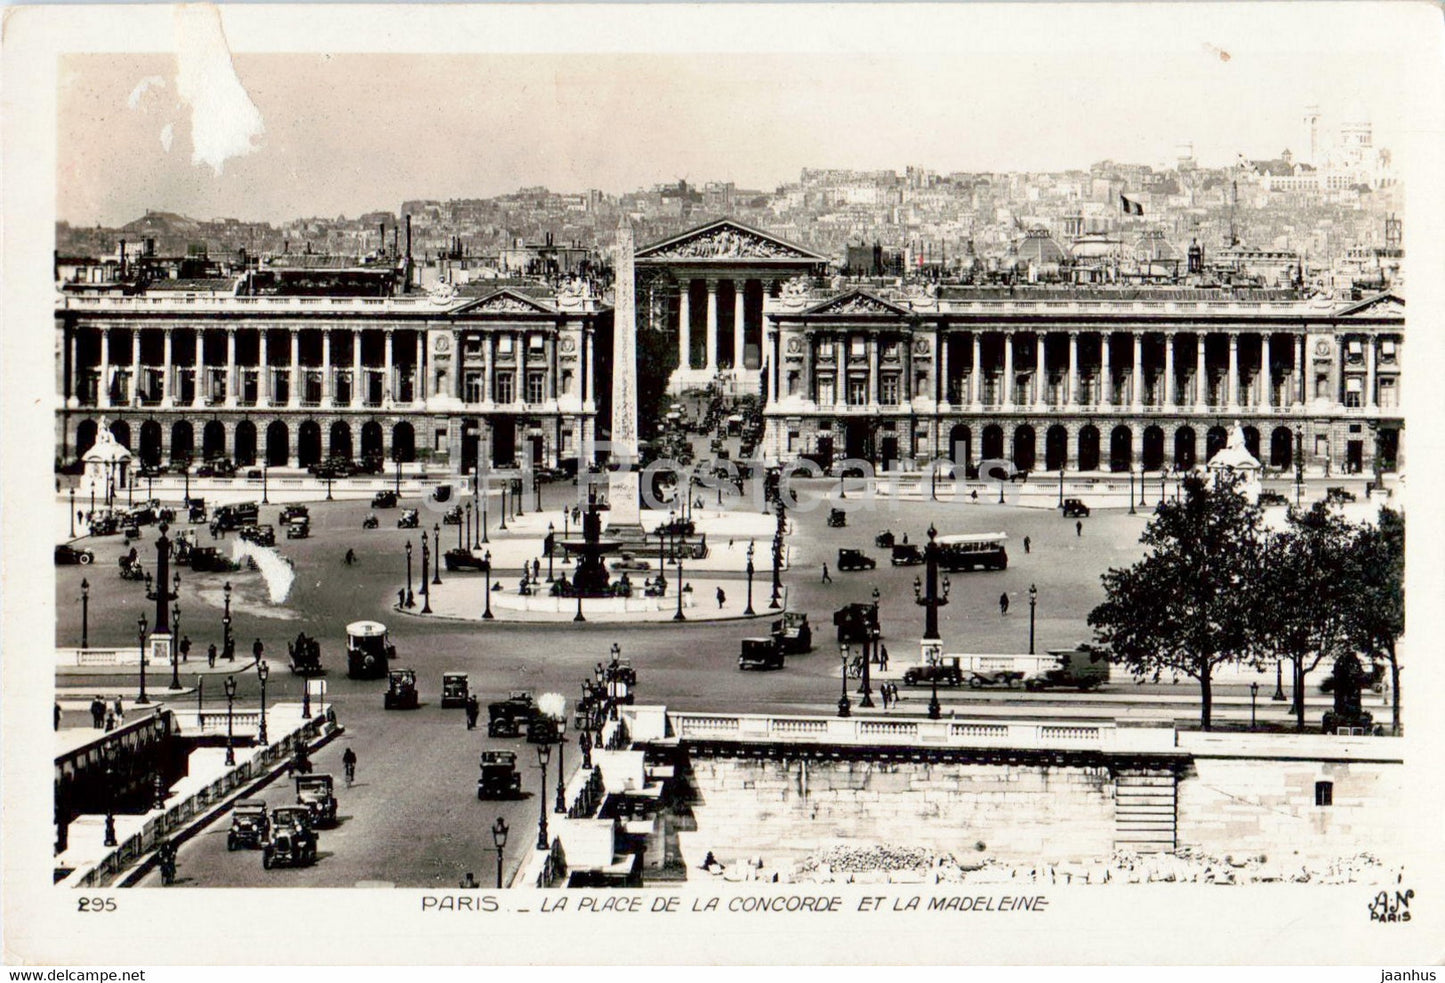 Paris - La Place de la Concorde et la Madeleine - 295 - old postcard - 1930 - France - used - JH Postcards